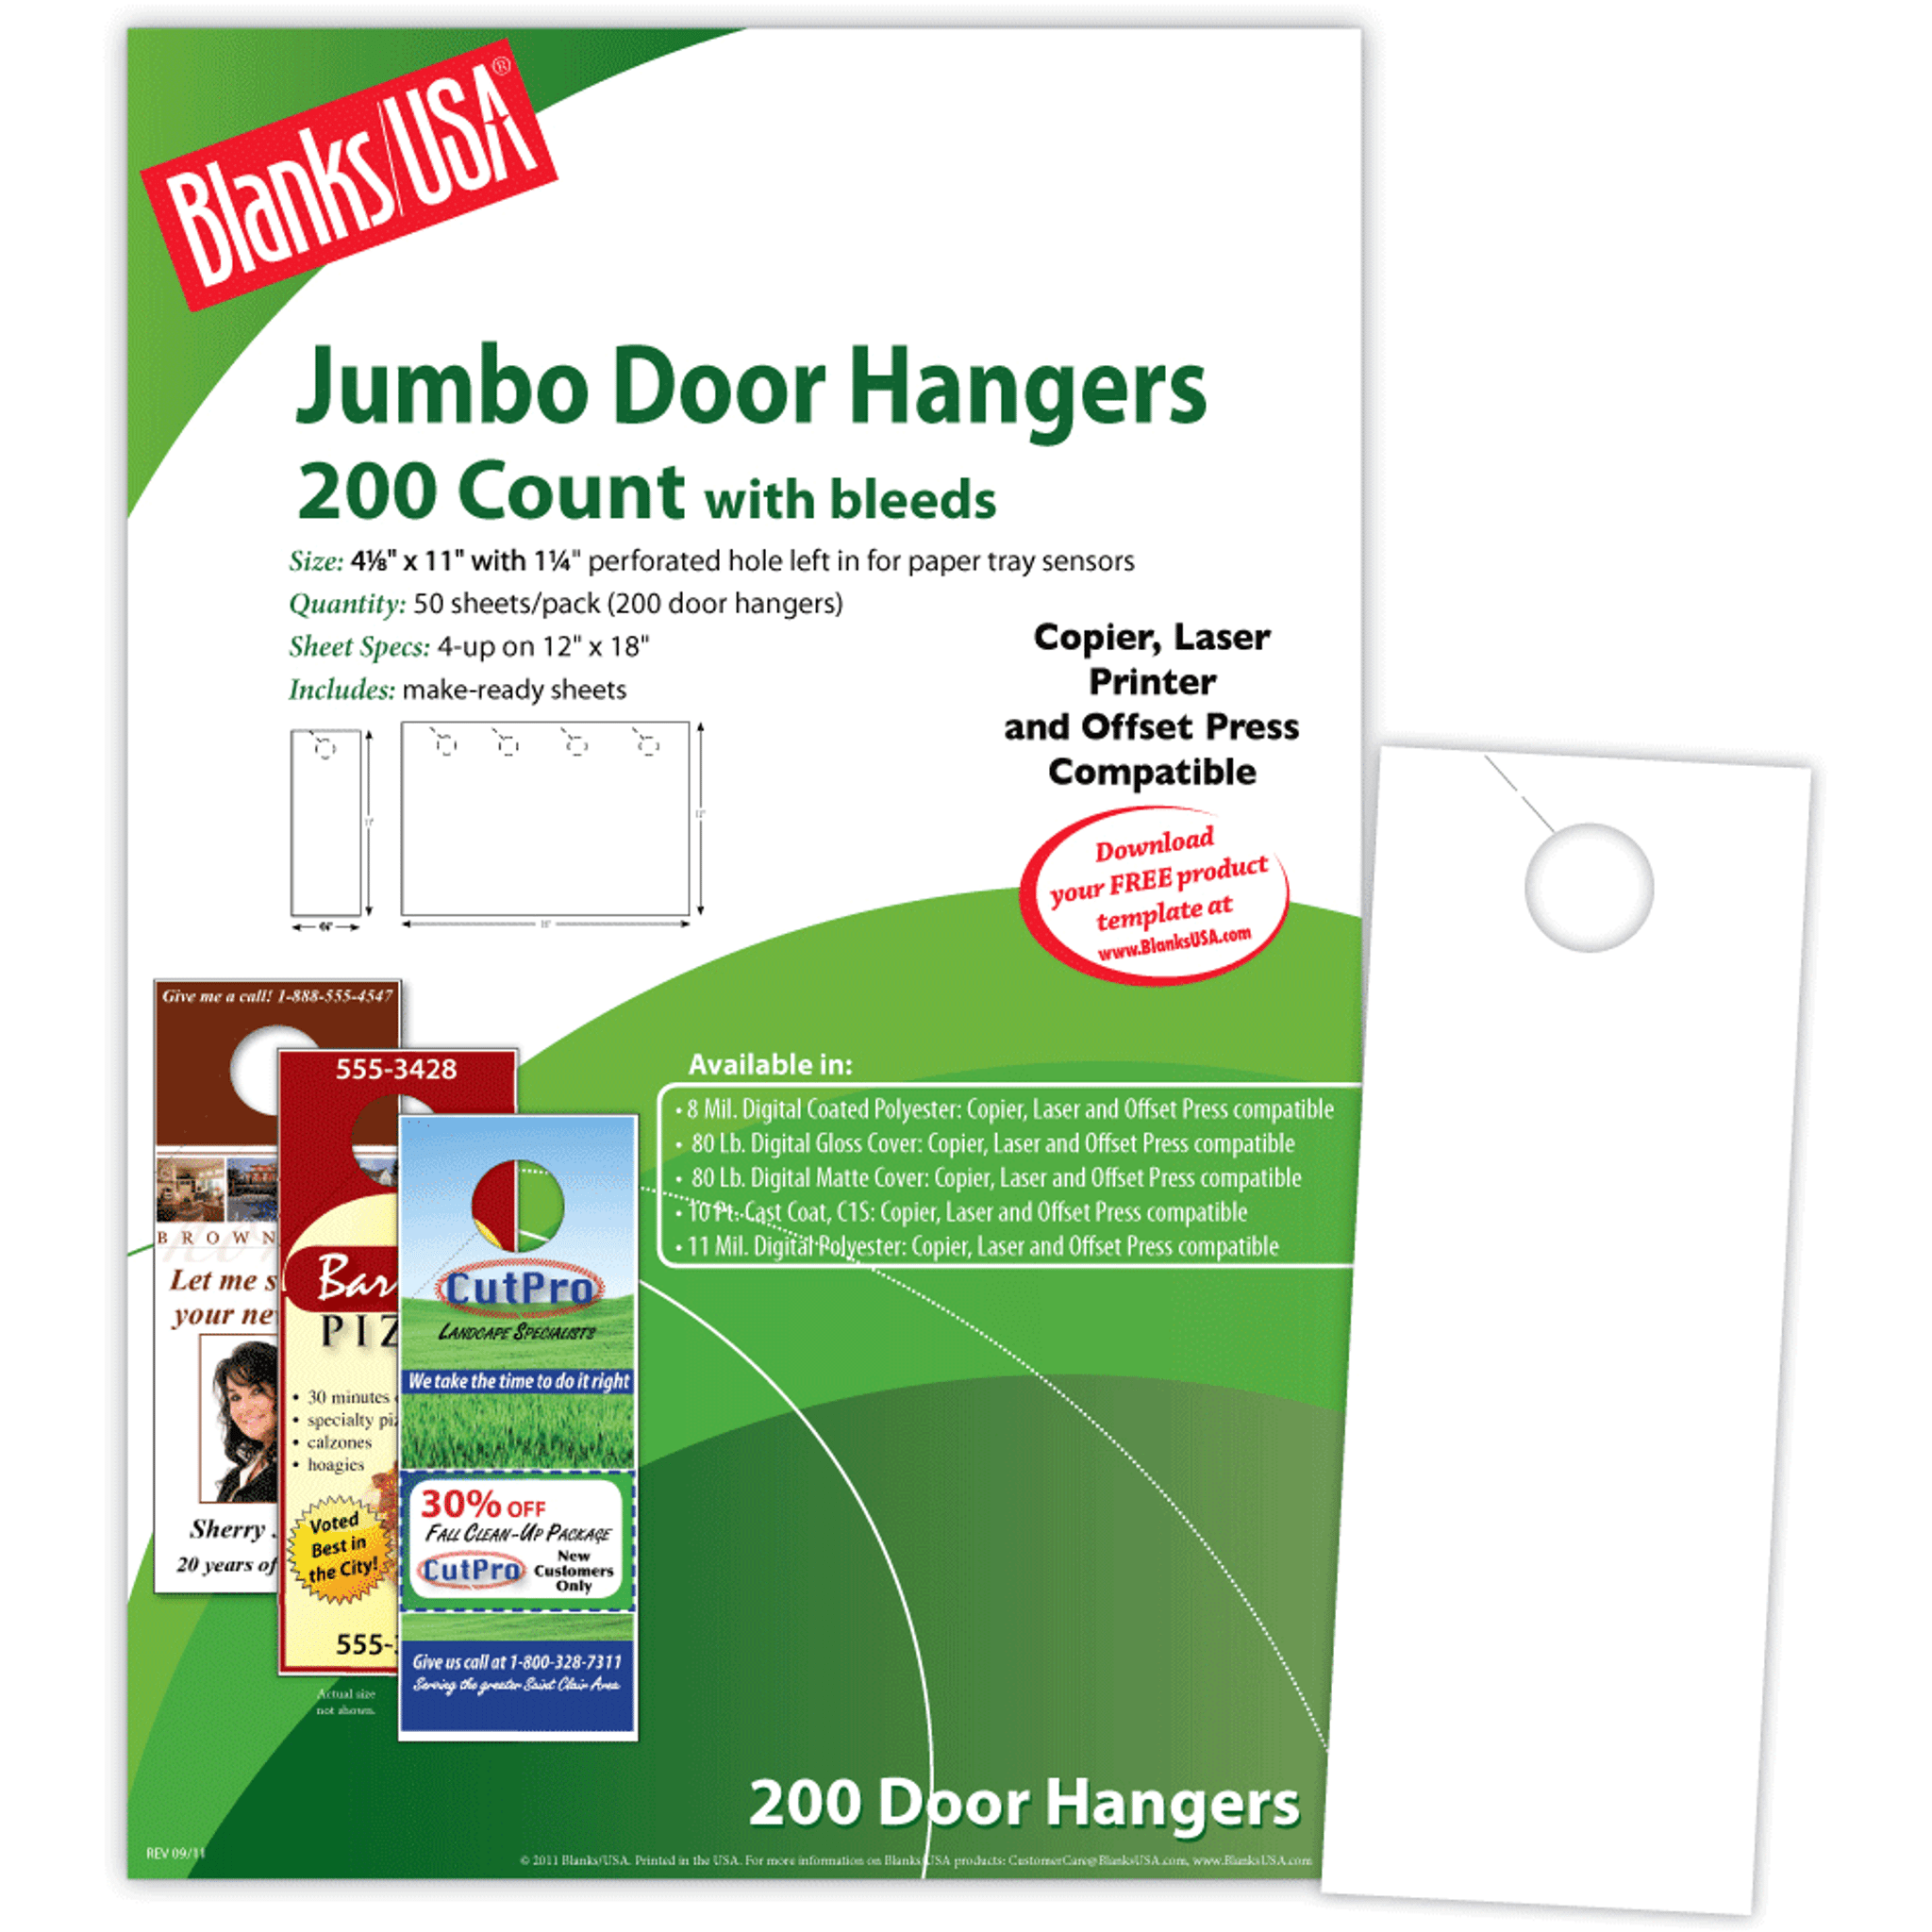 Small Door Hanger w/ Bleeds | 12 x 18 Sheet | 6 Hangers/Sheet